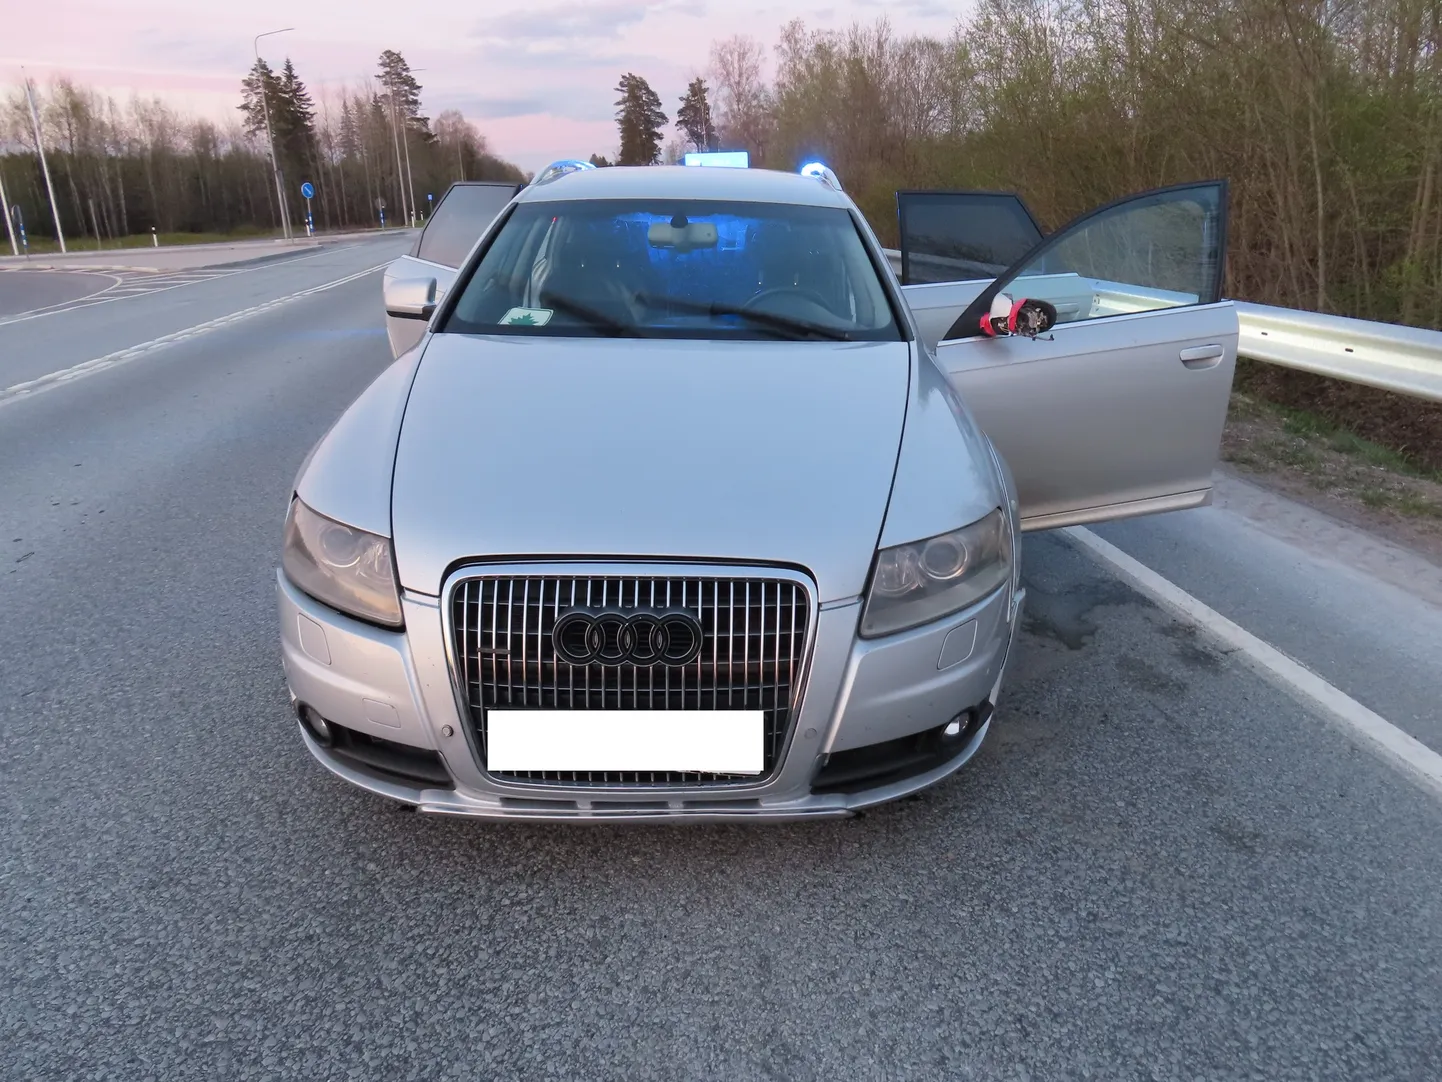 Сбегая с места происшествия в лес, юнцы бросили "раллийный" "Audi" на встречной полосе шоссе Таллинн-Нарва.